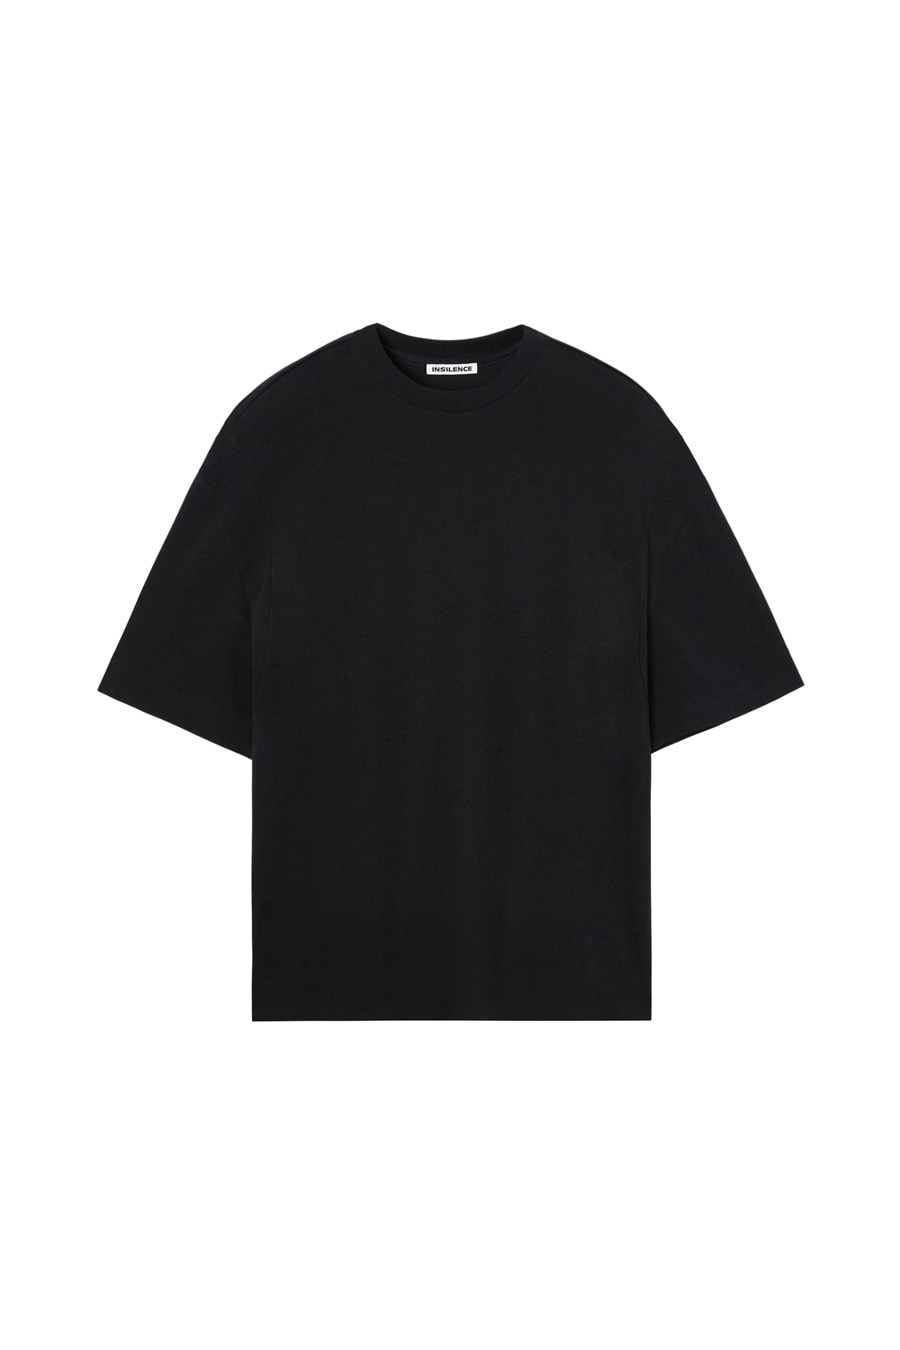 패널드 오버핏 티셔츠 BLACK